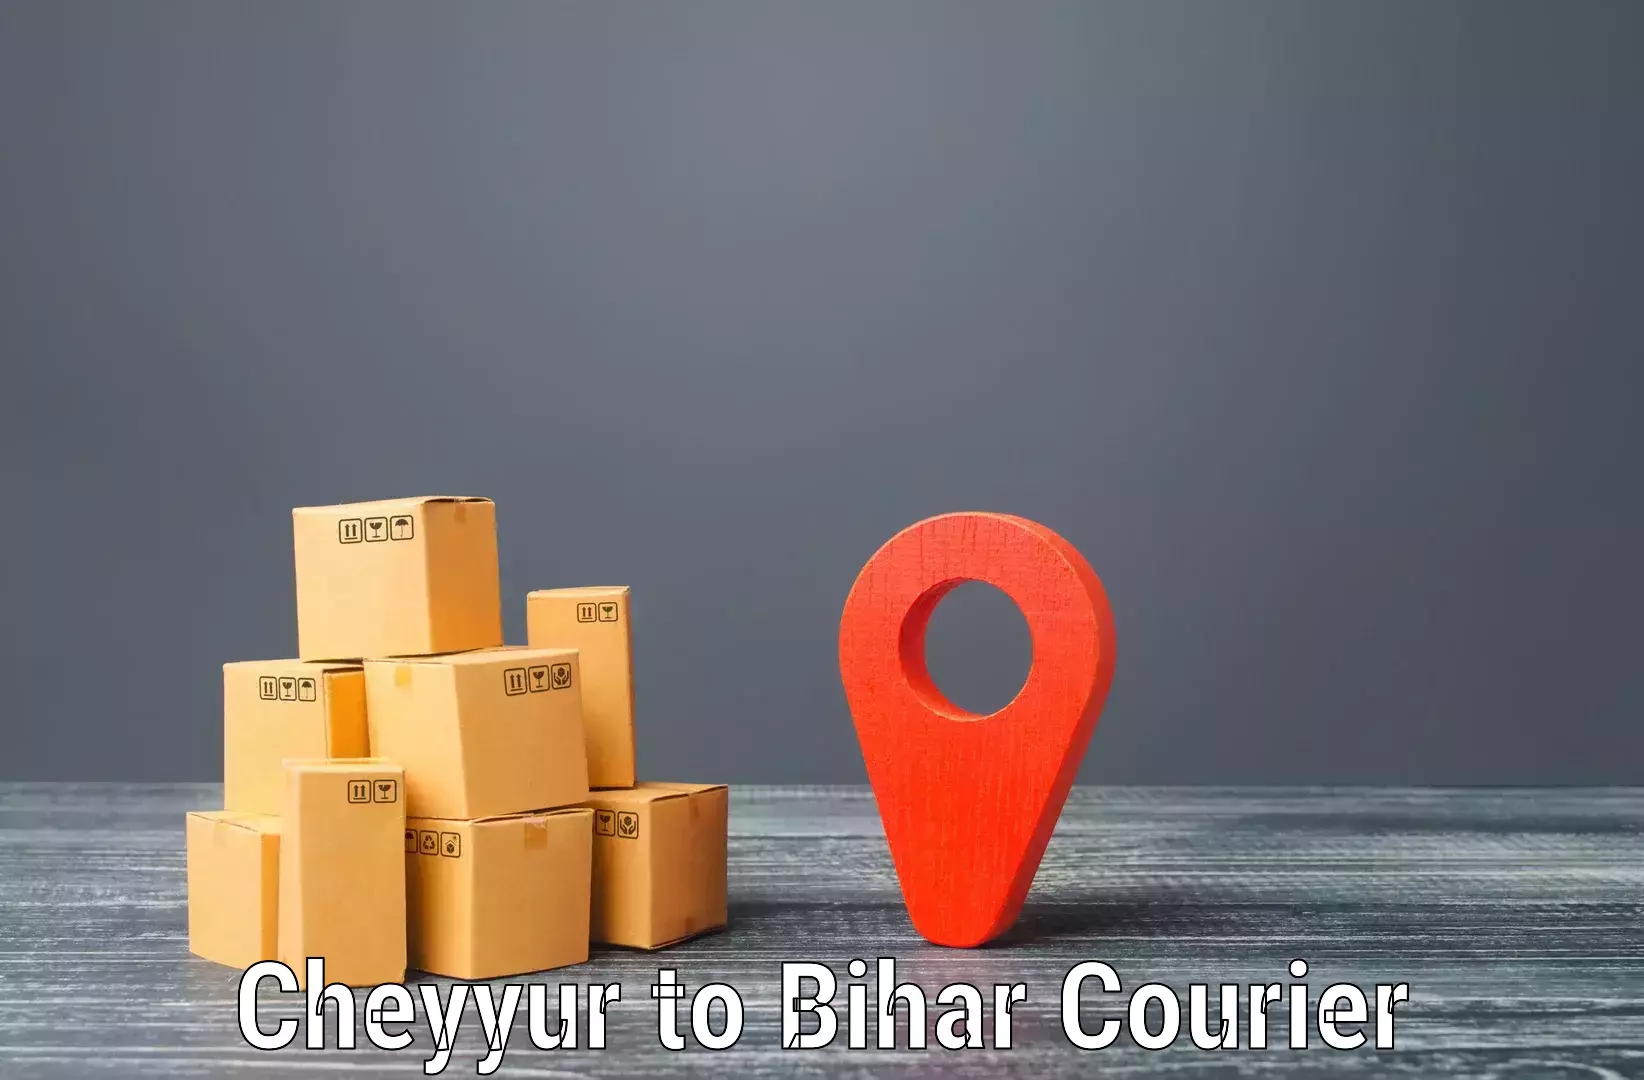 Premium courier services Cheyyur to Katoria